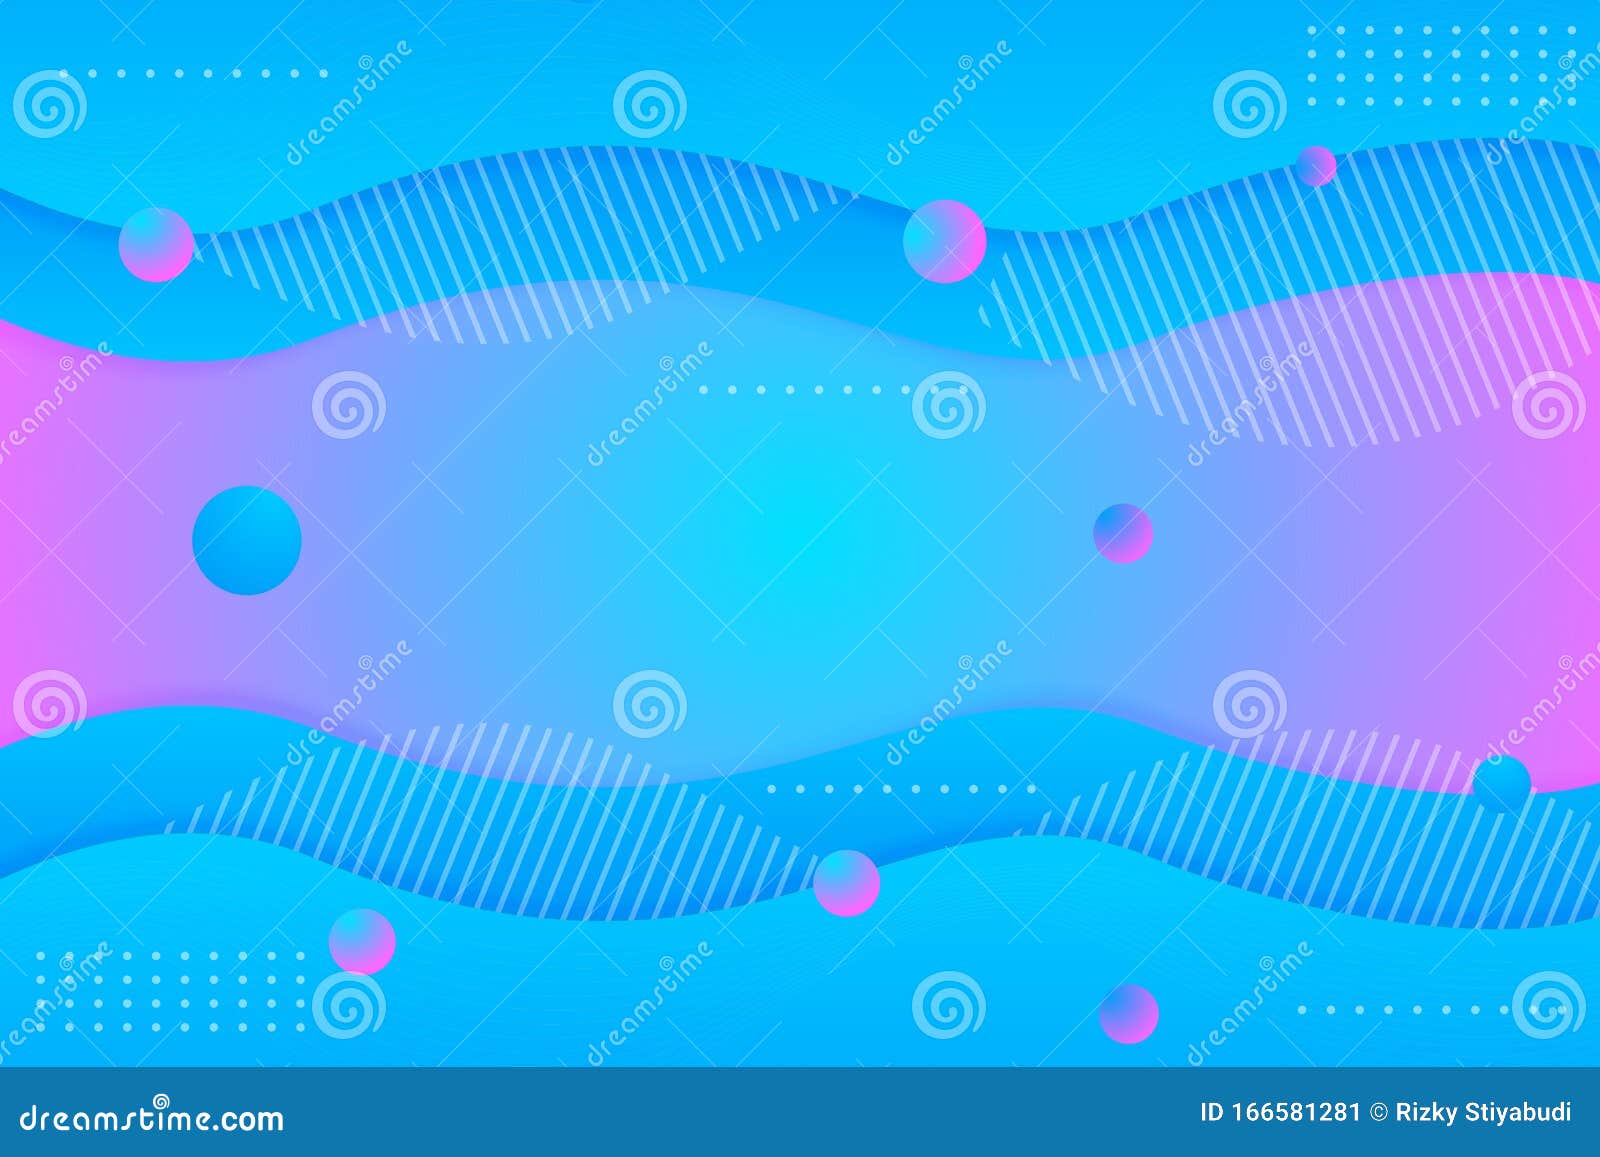 全息图抽象液体背景带全息图的彩色梯度网格背景circle Element And Line Pattern 向量例证 插画包括有滤网 背包